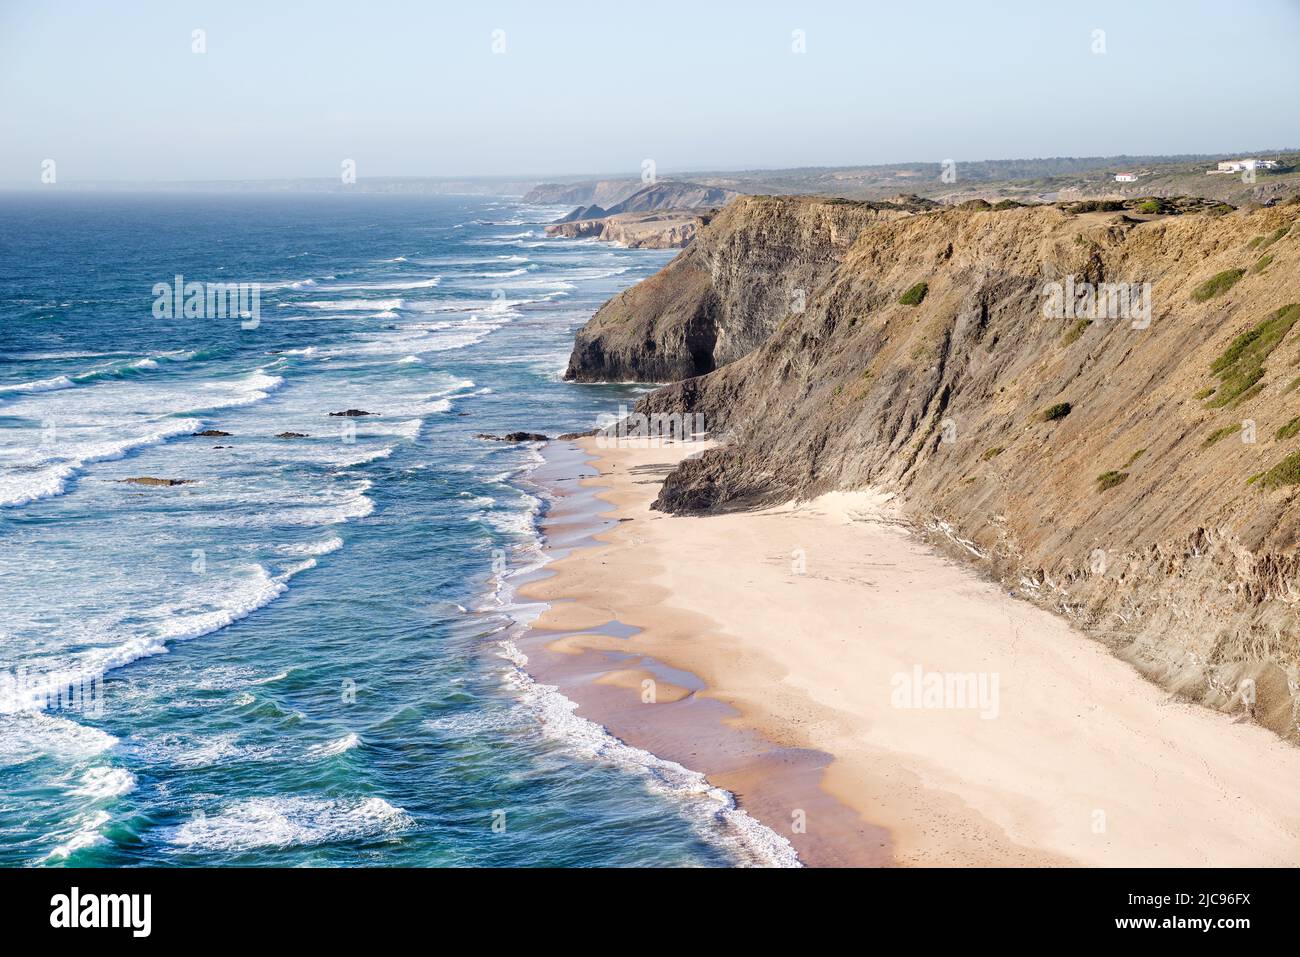 Verschiedene Sandtöne schaffen einen auffallenden Kontrast bei der rückläufigen Flut - Praia de Fateixa, Algarve, Portugal Stockfoto